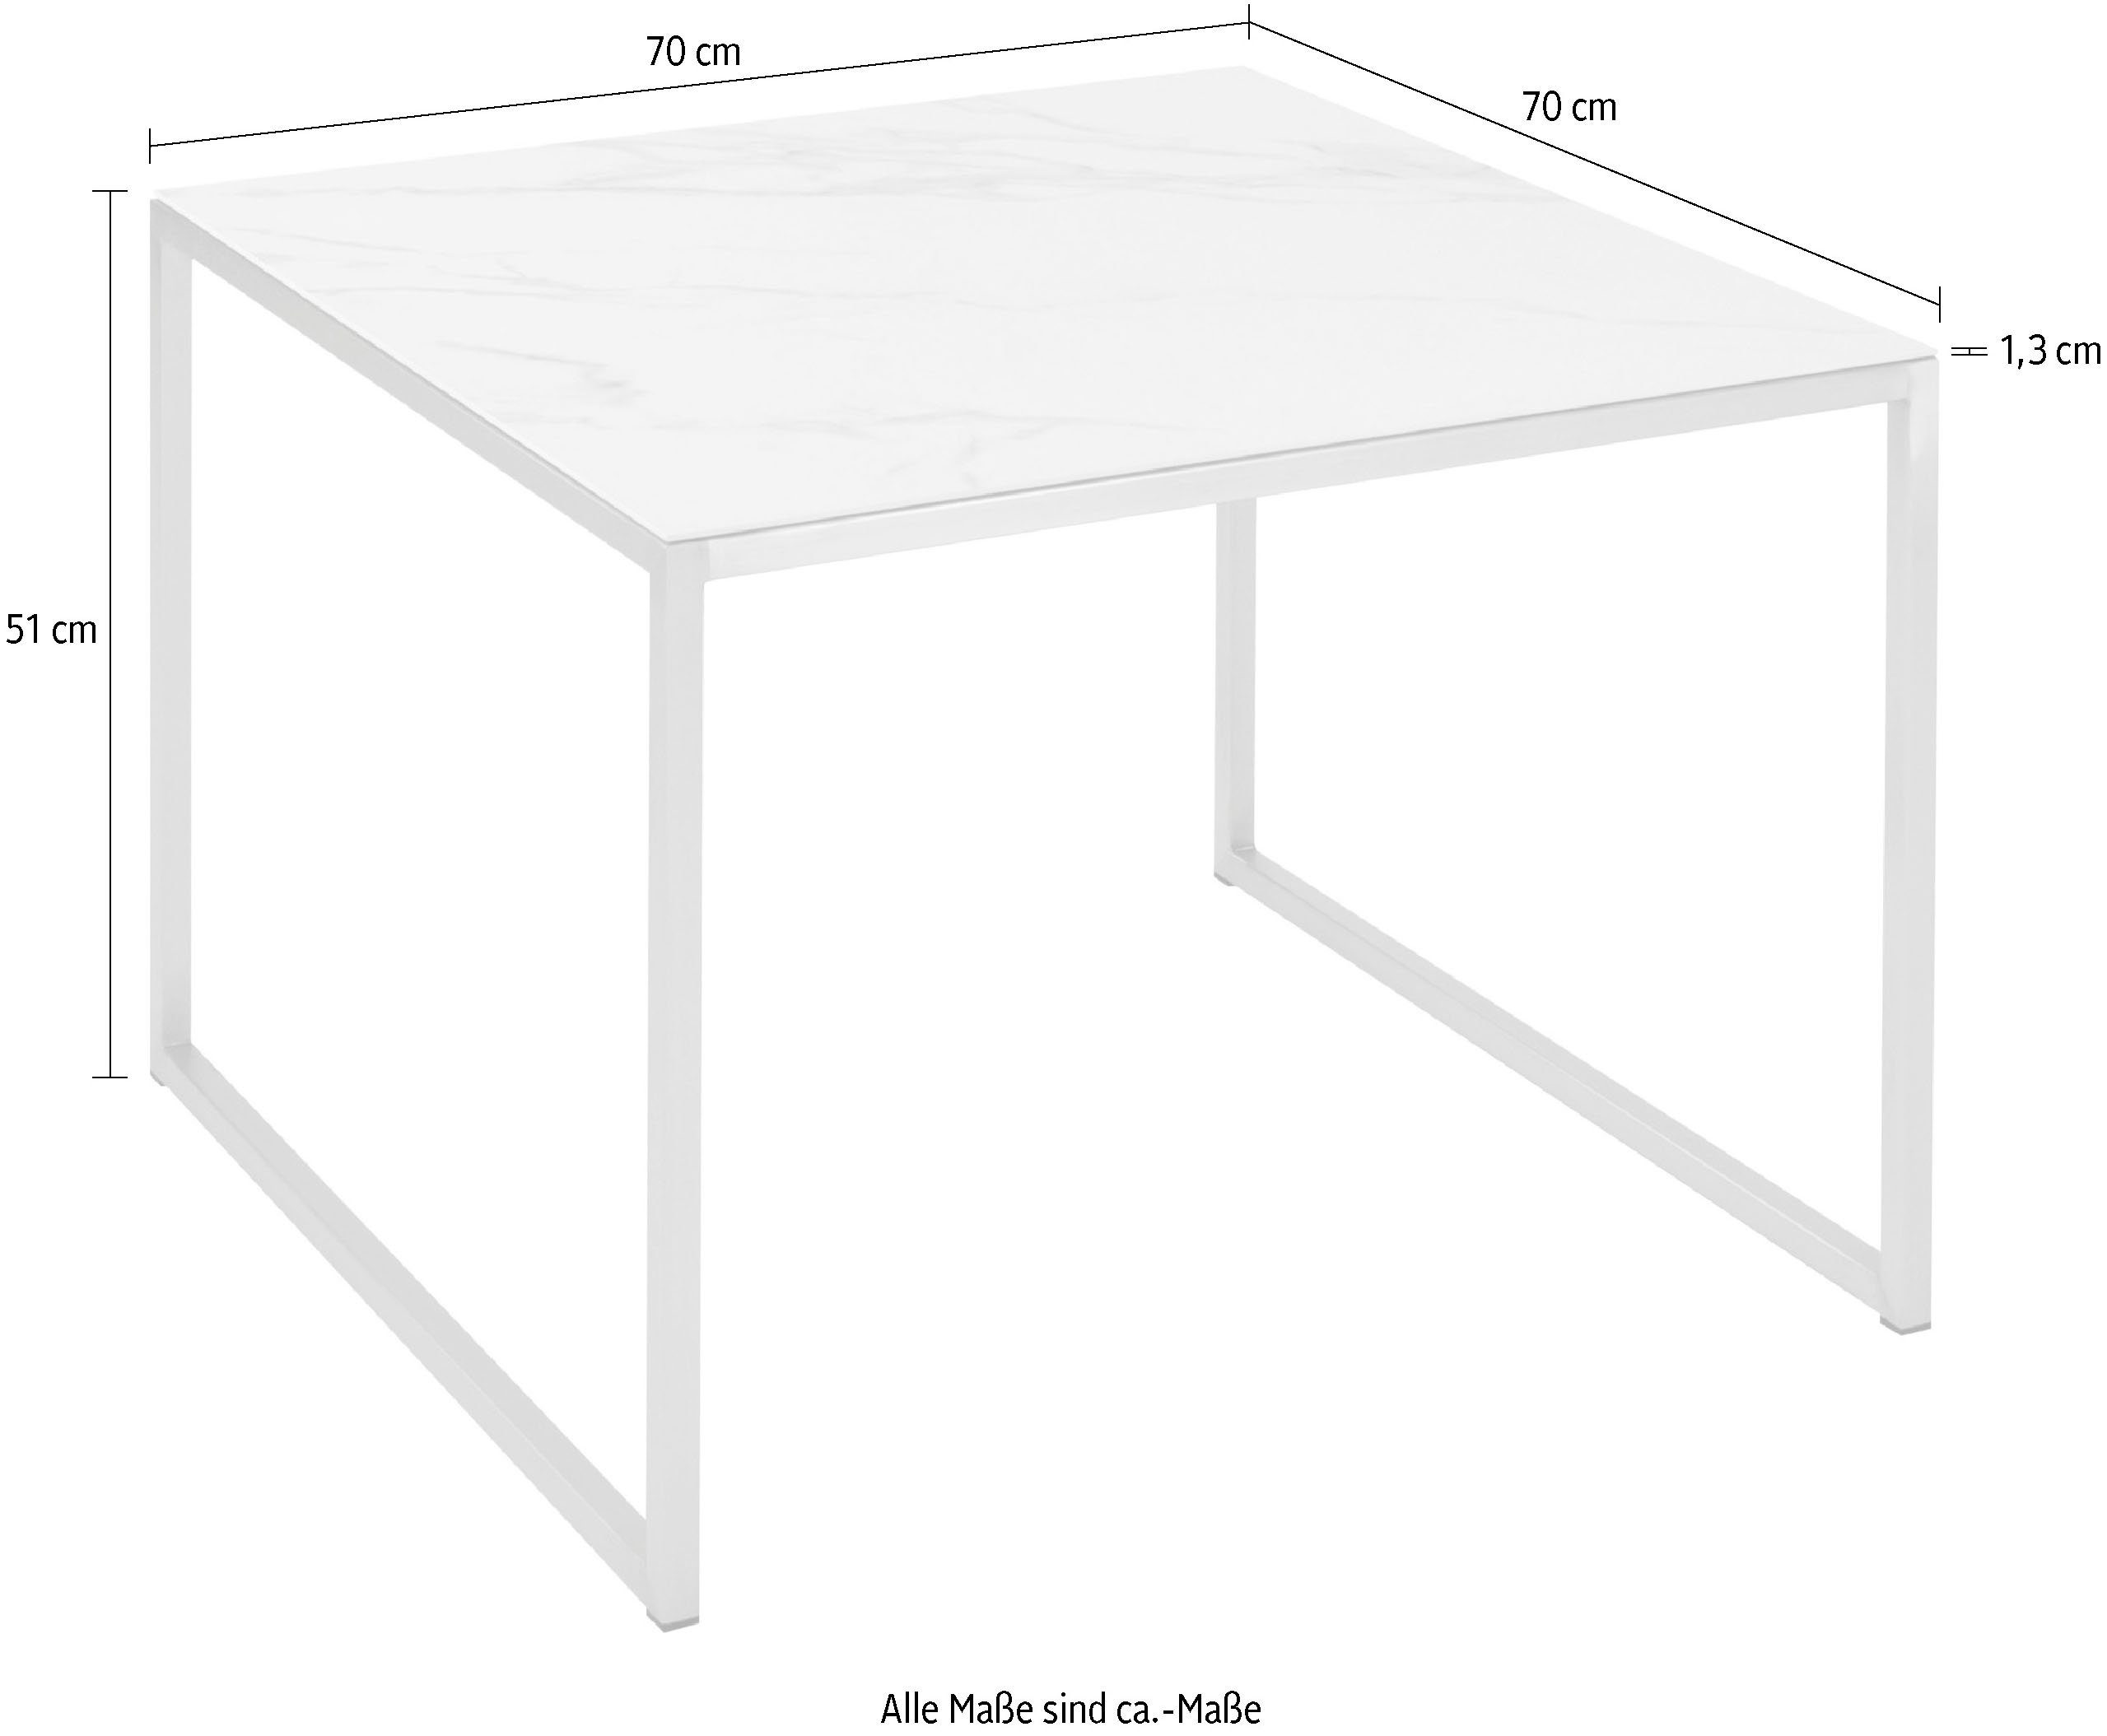 Möbel hochwertiger Tischplatte aus Keramik Couchtisch, Henke